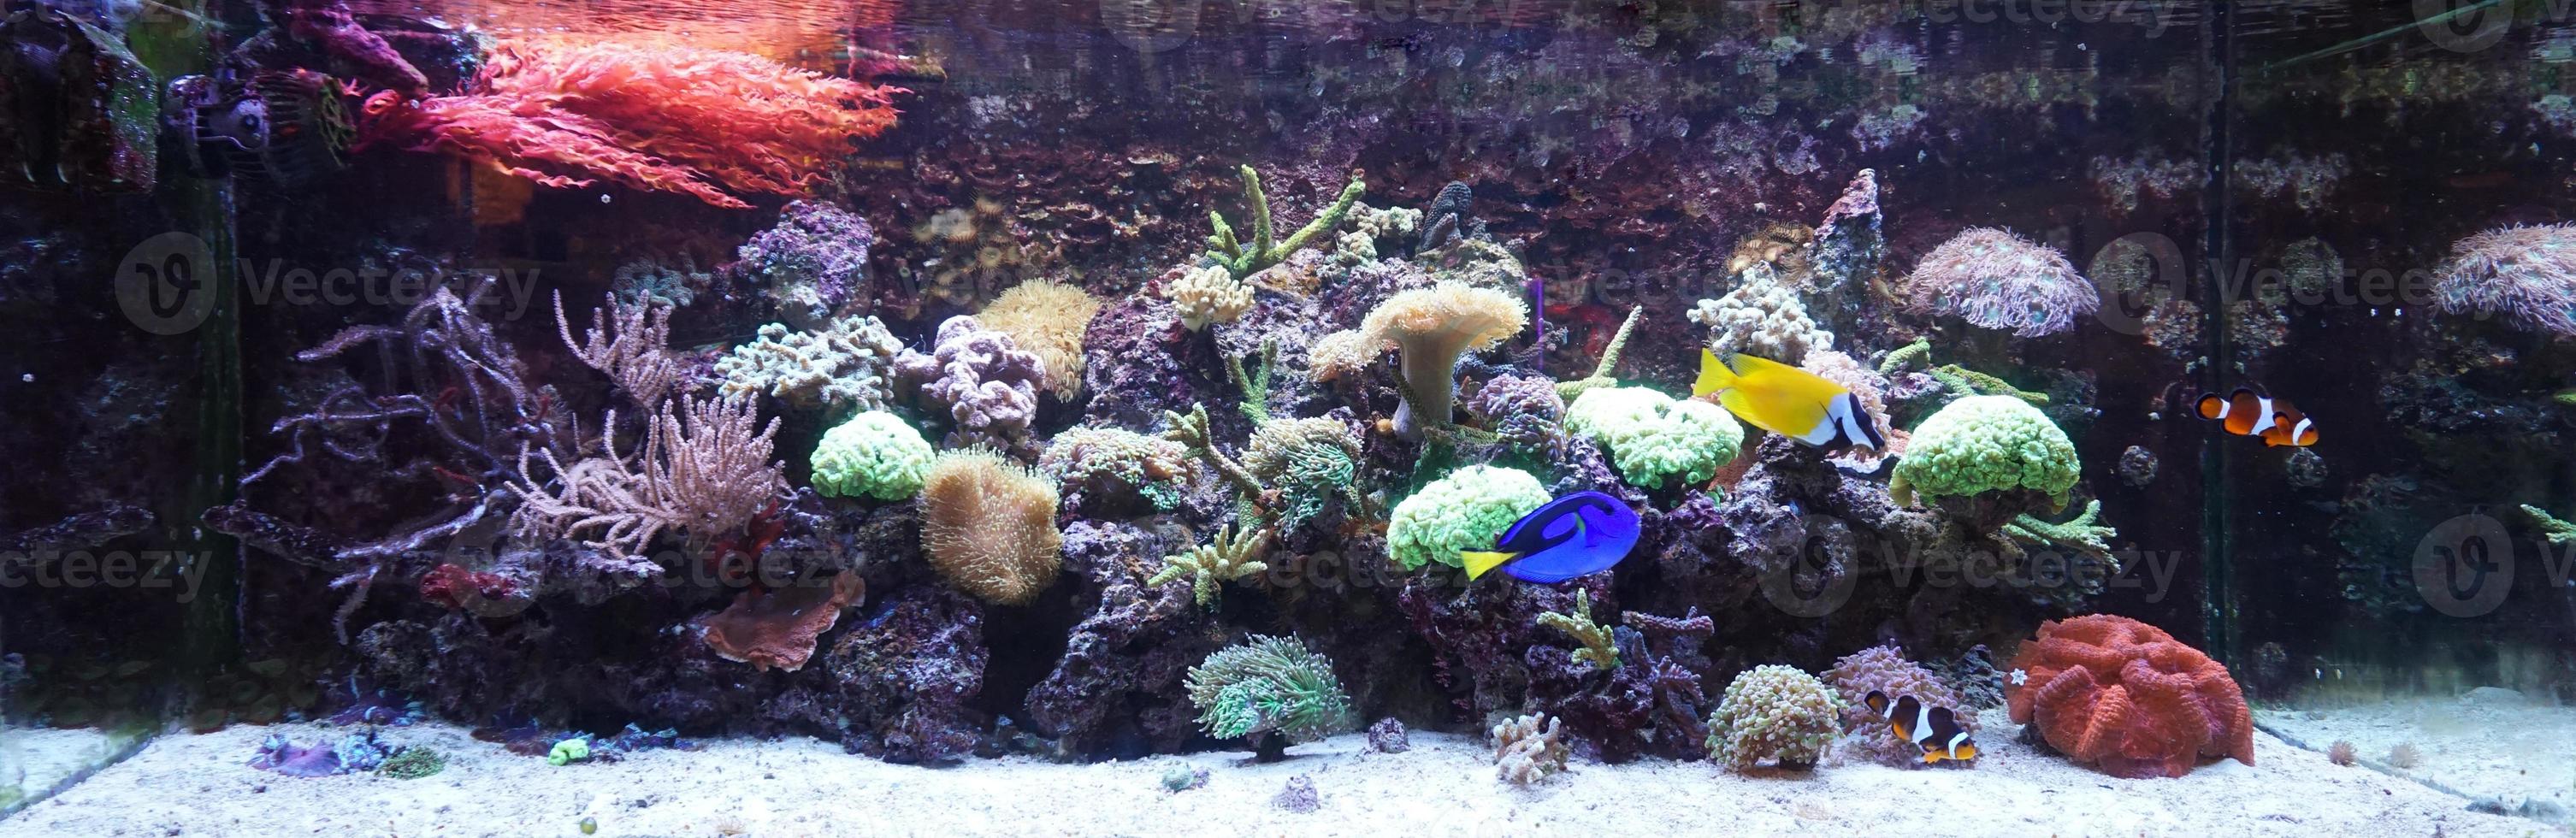 hipopótamo, coelho foxface e peixe anêmona nadando em aquário com recife de coral foto